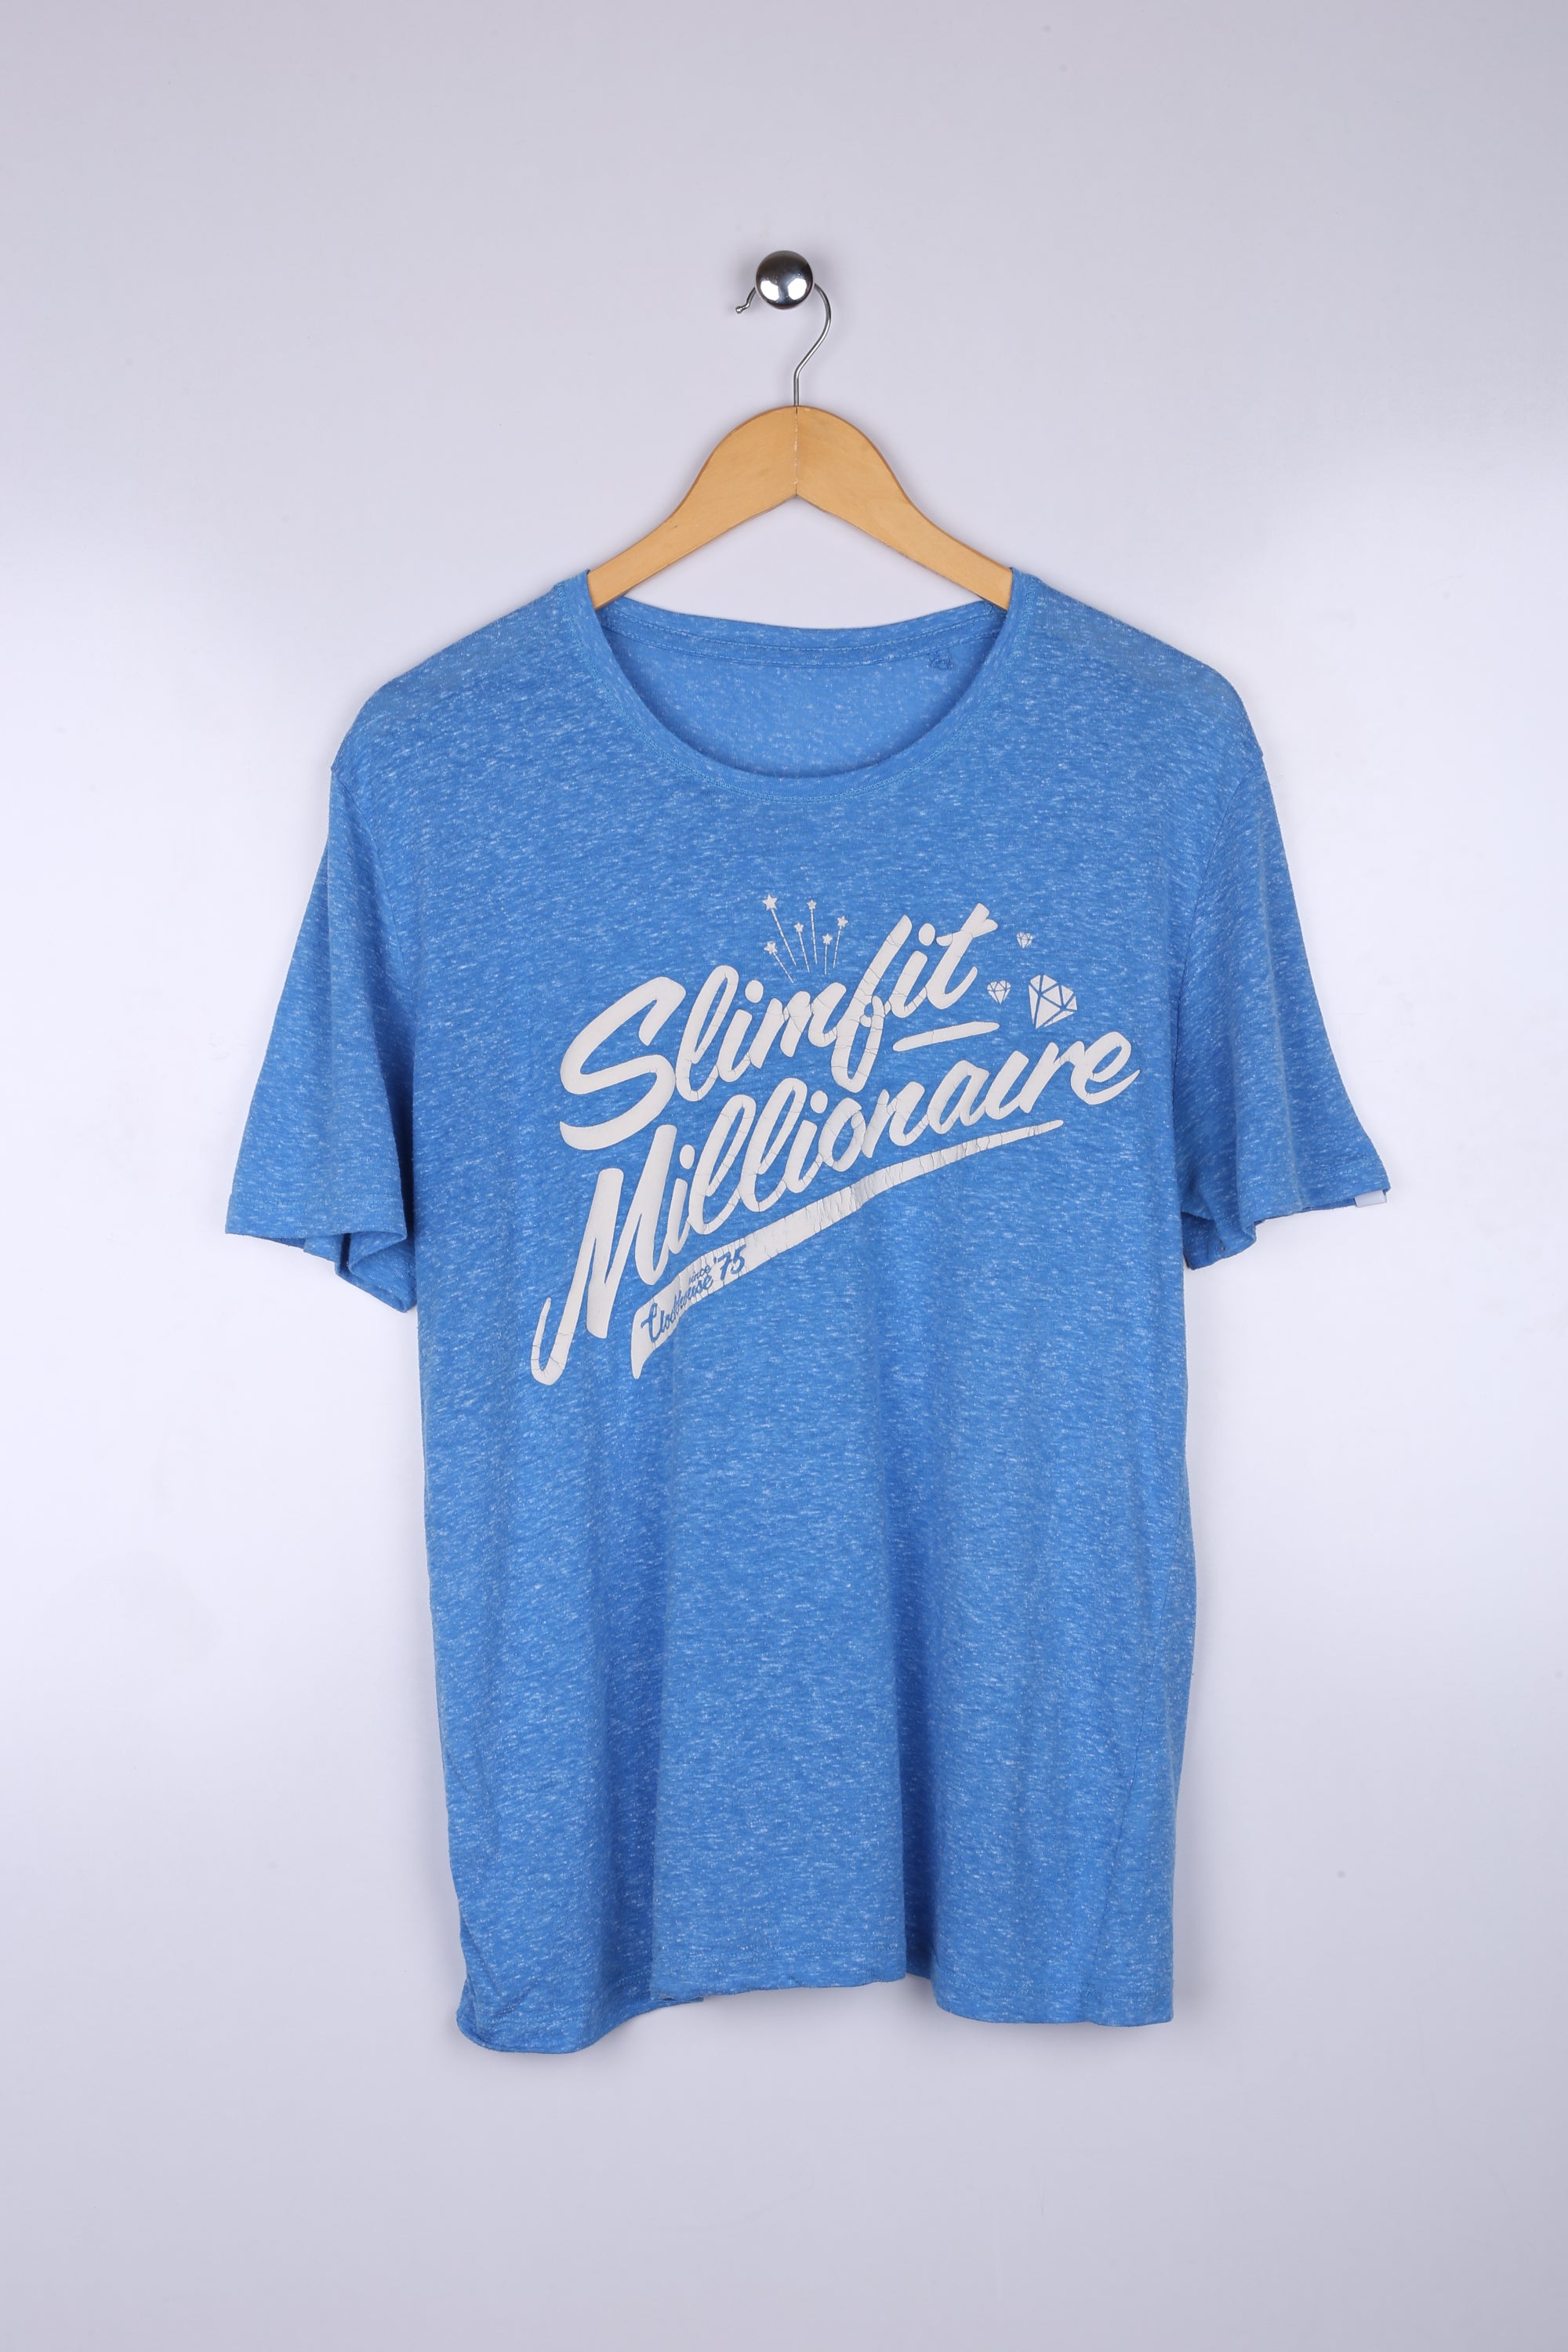 Vintage Slimfit Millionare Graphic Tee Sky Blue Mediu